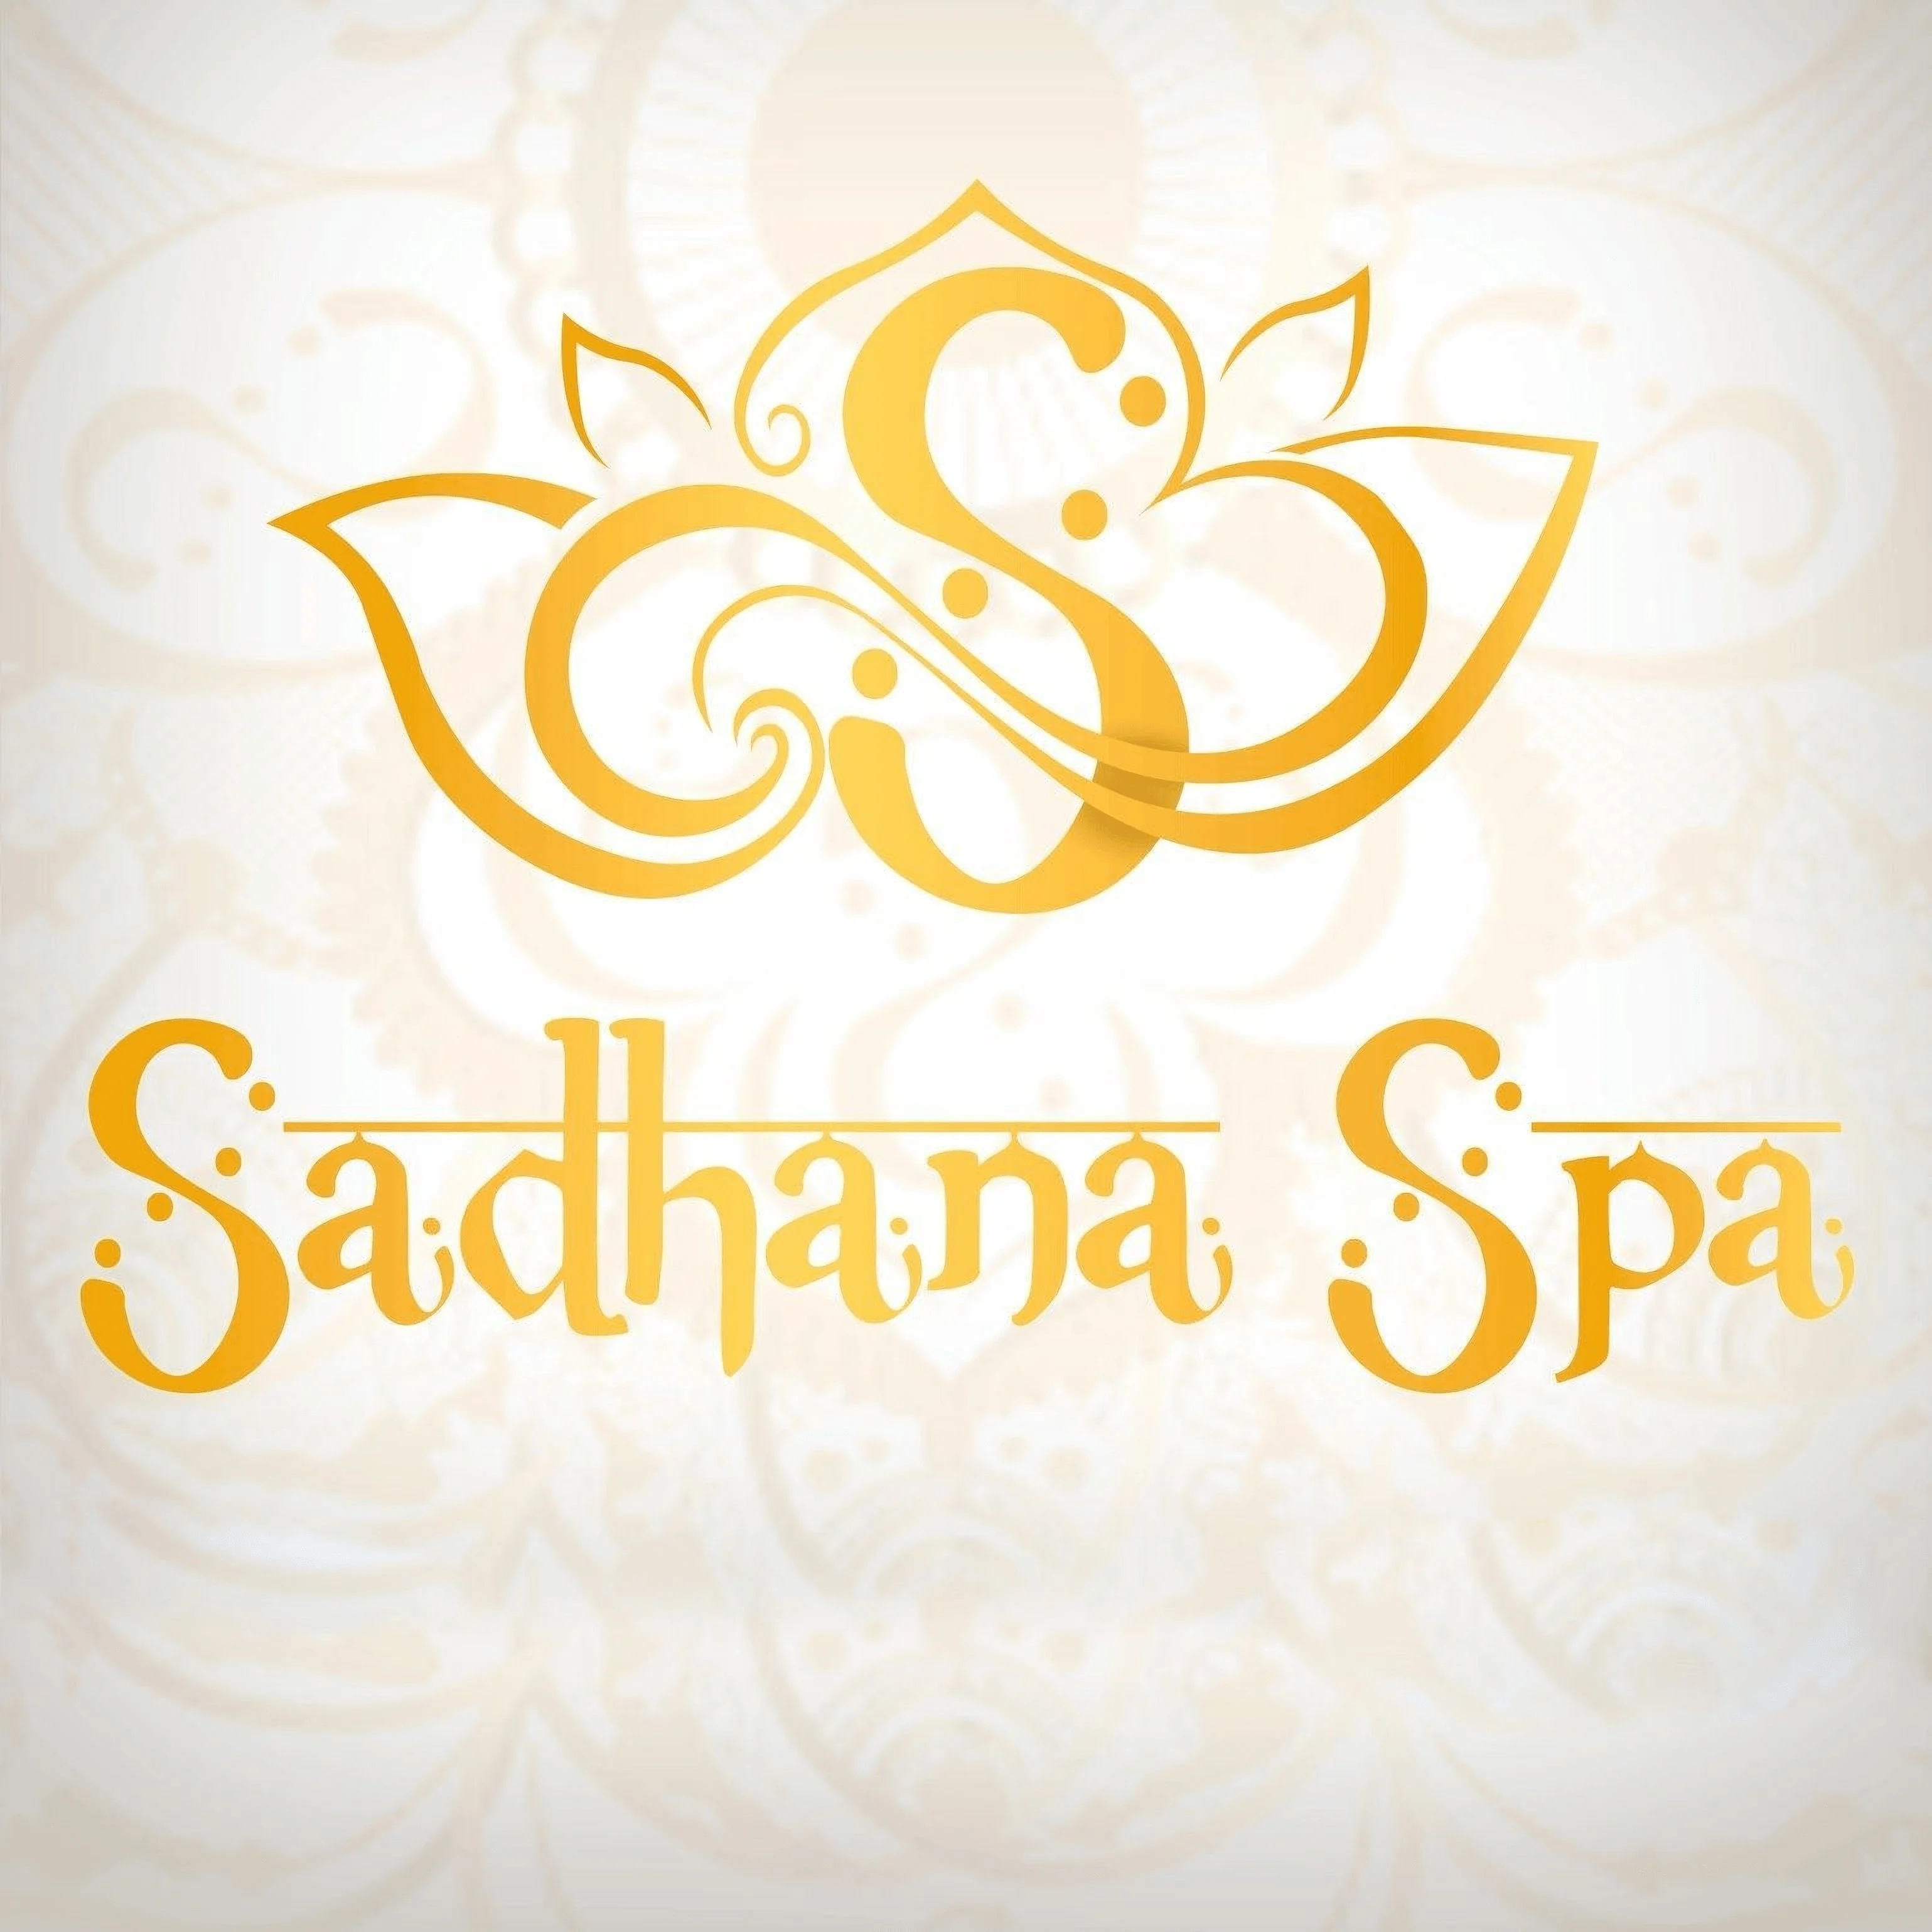 Spa-sadhana-spa-11352